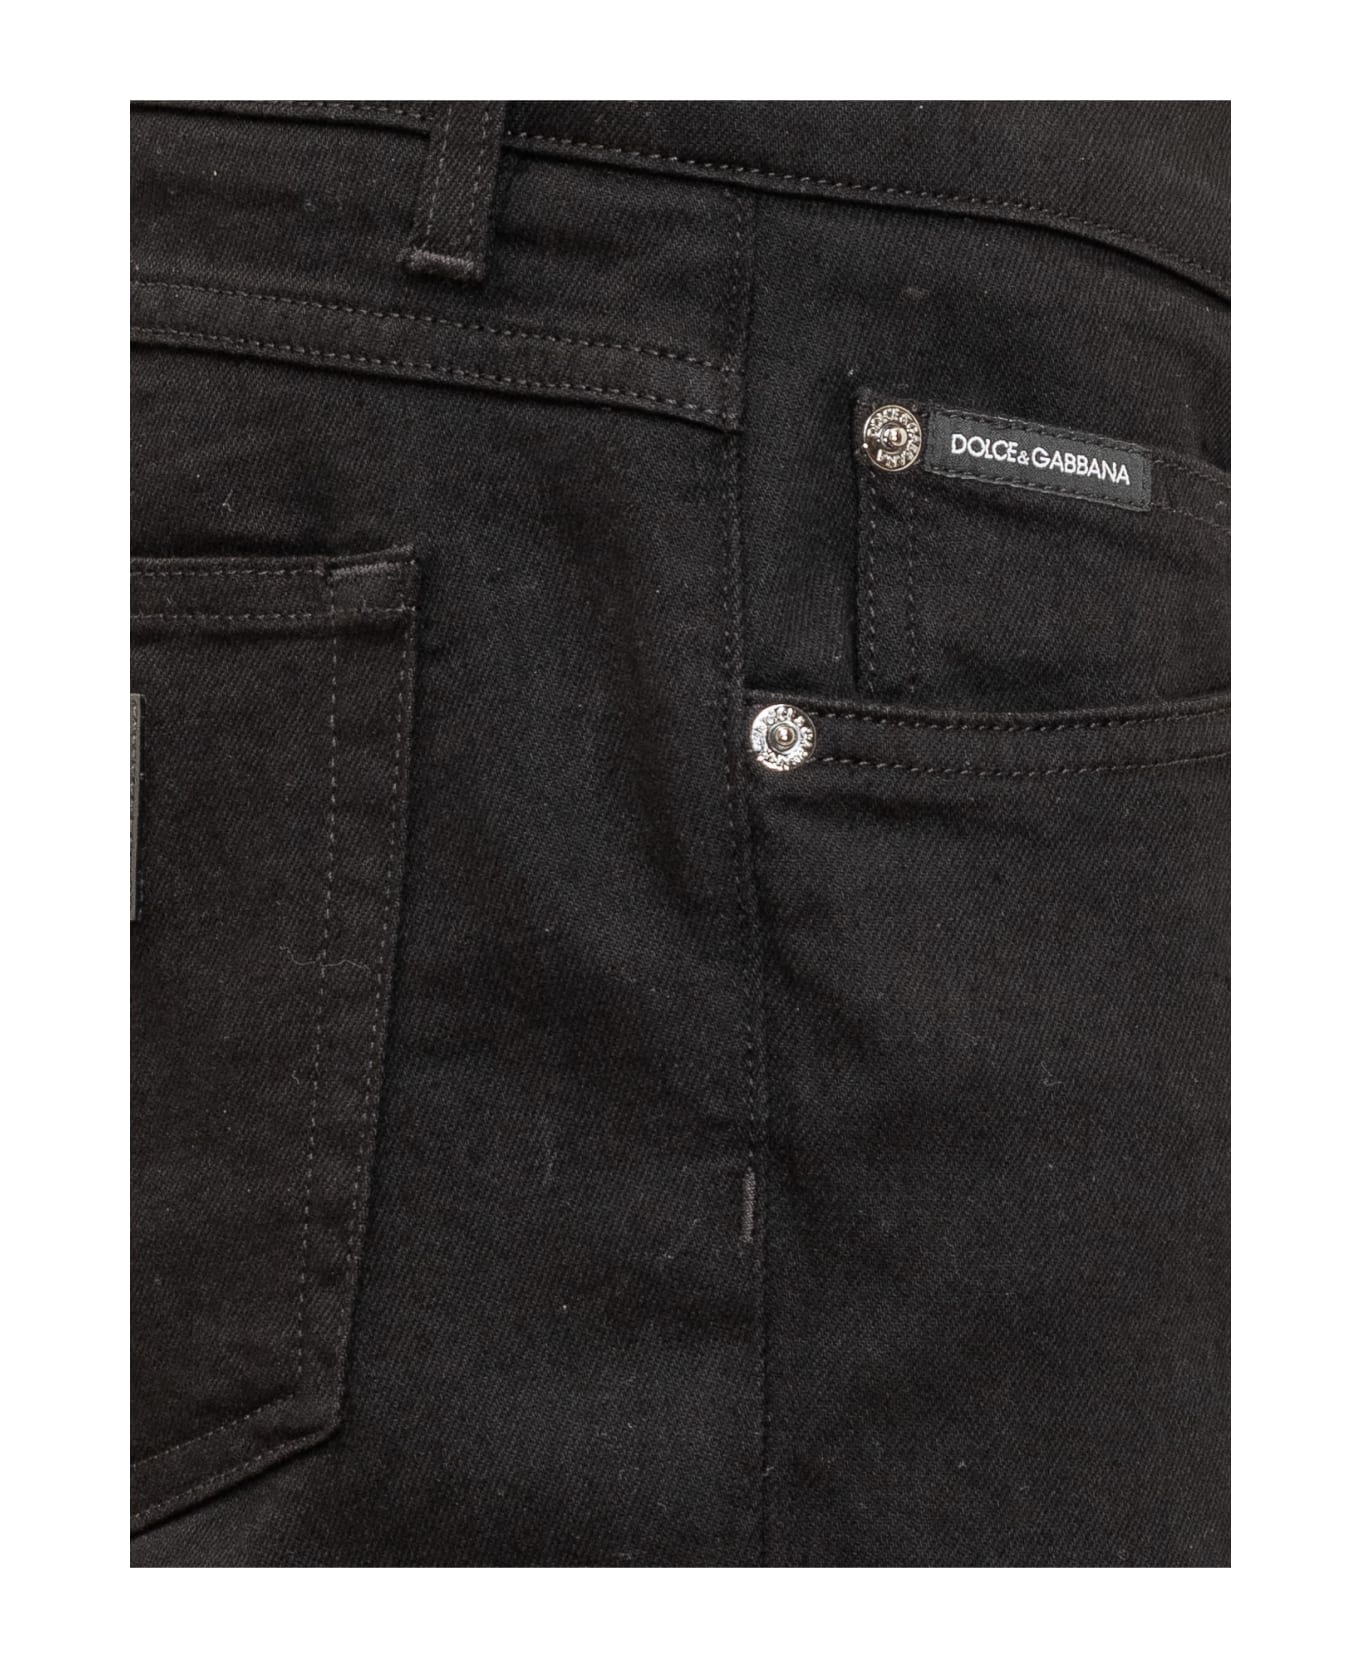 Dolce & Gabbana Slim Five-pocket Model Jeans - BLACK ボトムス